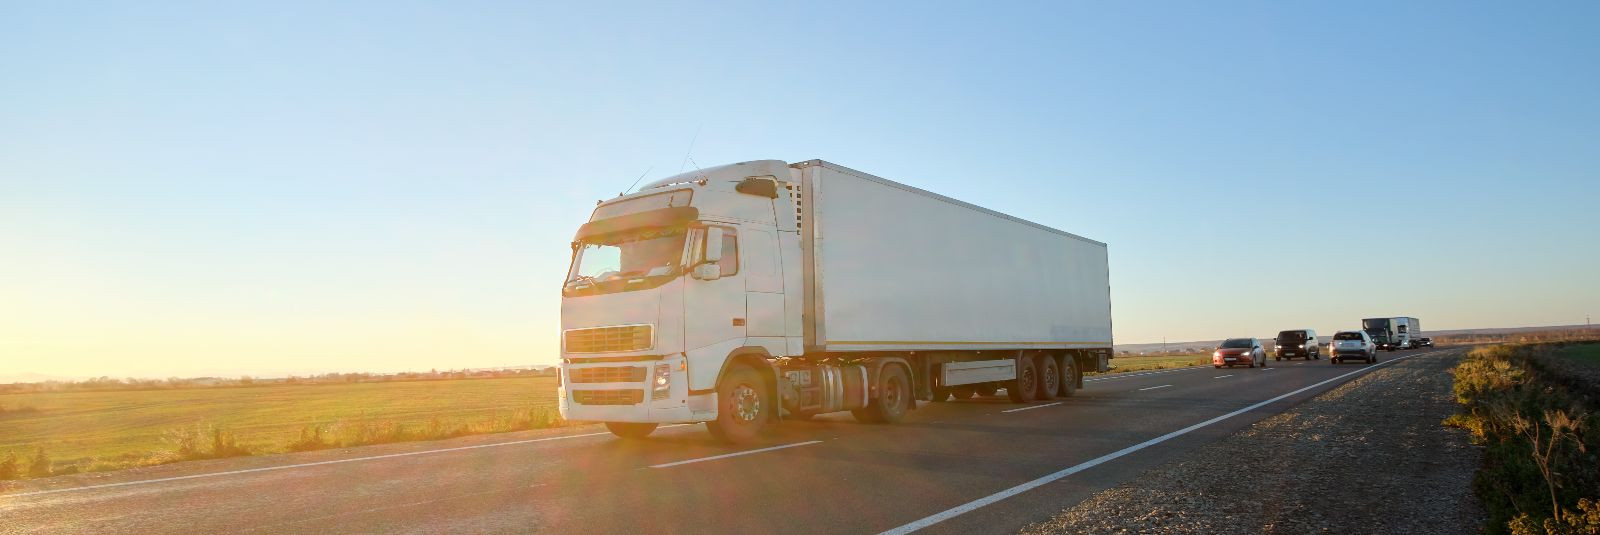 Maanteetransport on üks olulisemaid viise kaupade liigutamiseks ja logistikateenuste pakkumiseks. Selles valdkonnas on mitmeid veoteenuseid, mis vastavad erinev